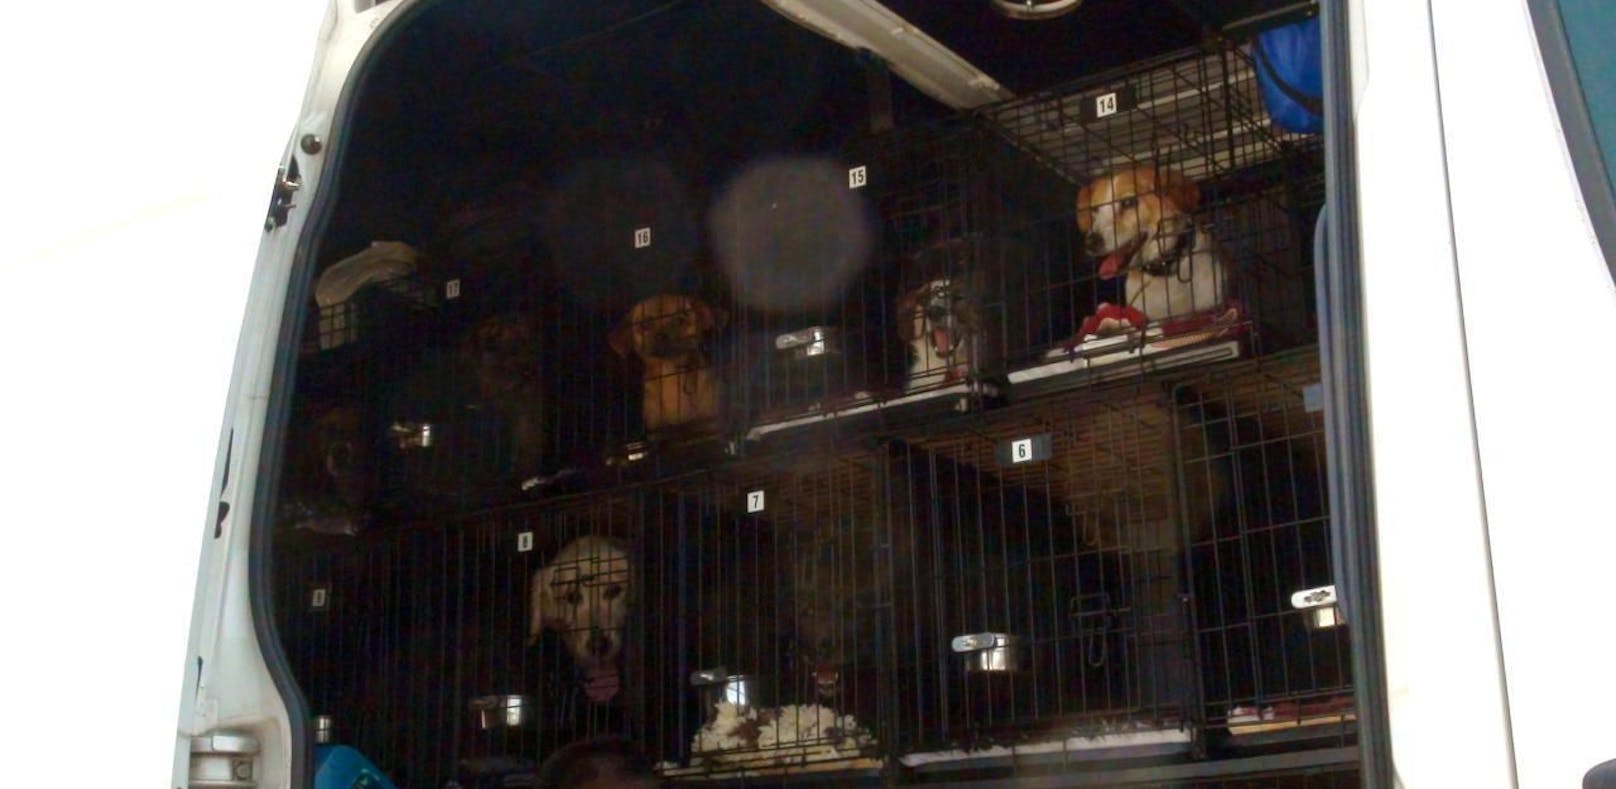 Die 27 Hunde waren in winzigen Käfigen im Minivan zusammengepfercht.